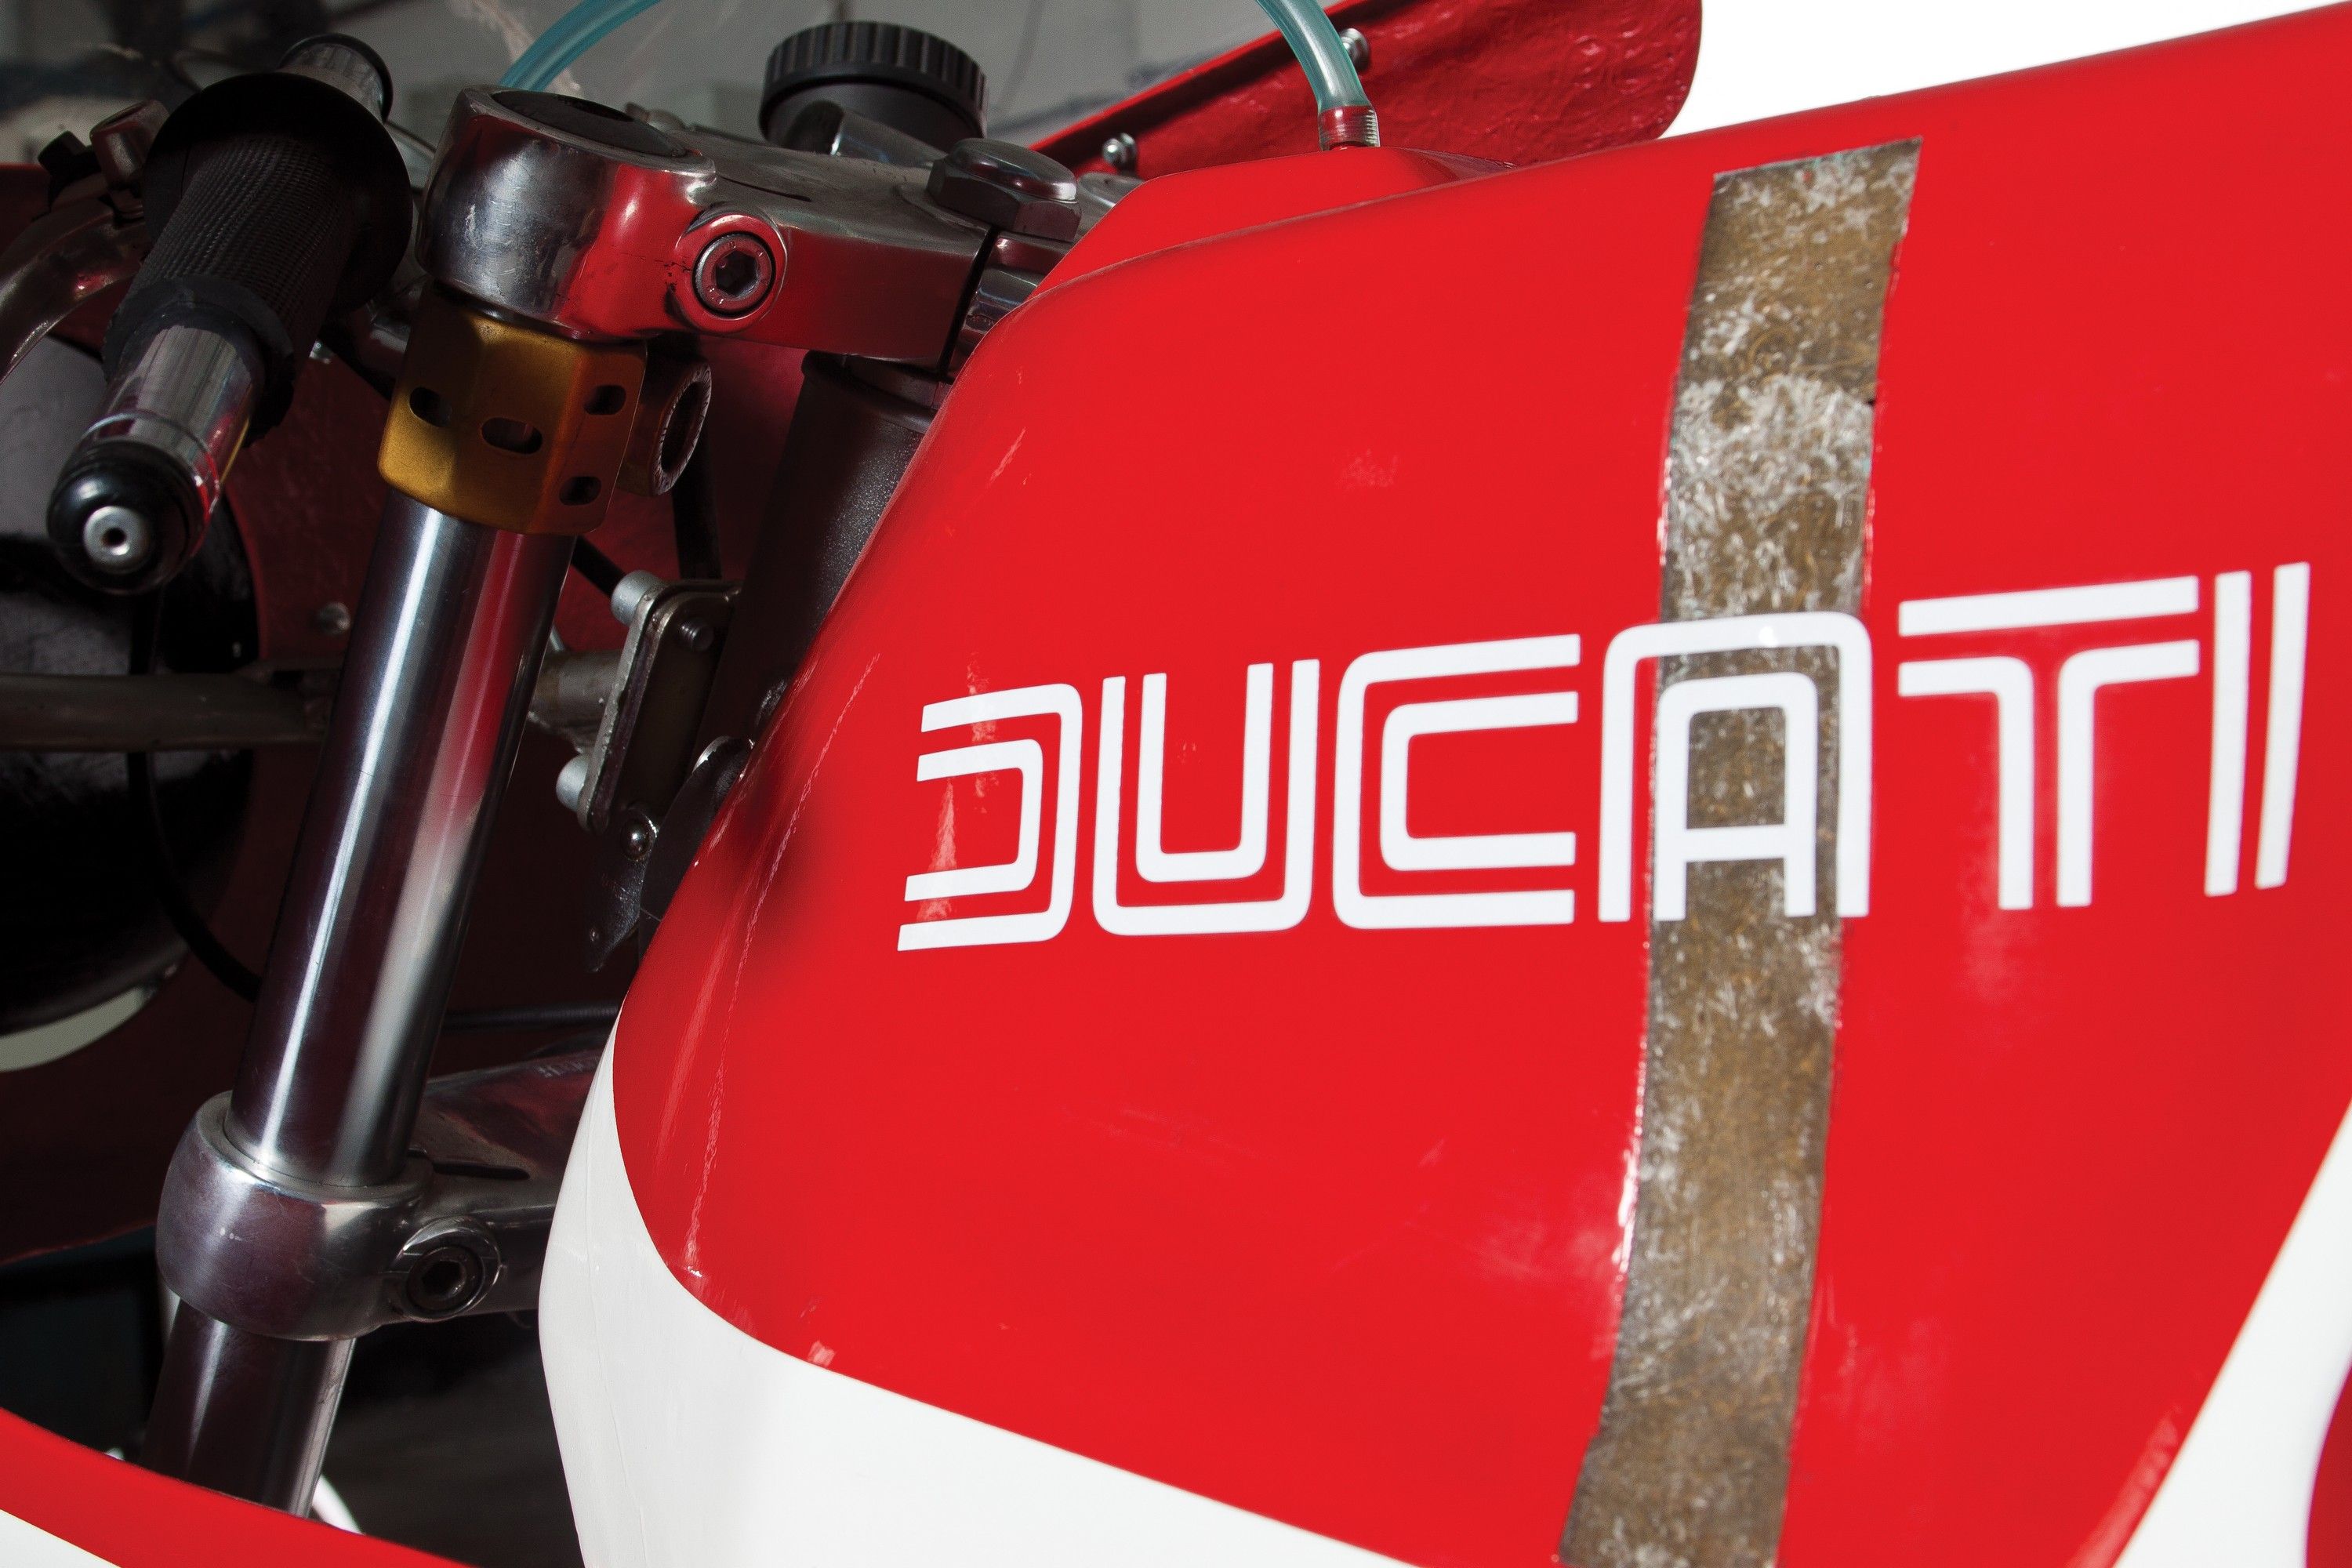 1976 Ducati 860 Corsa